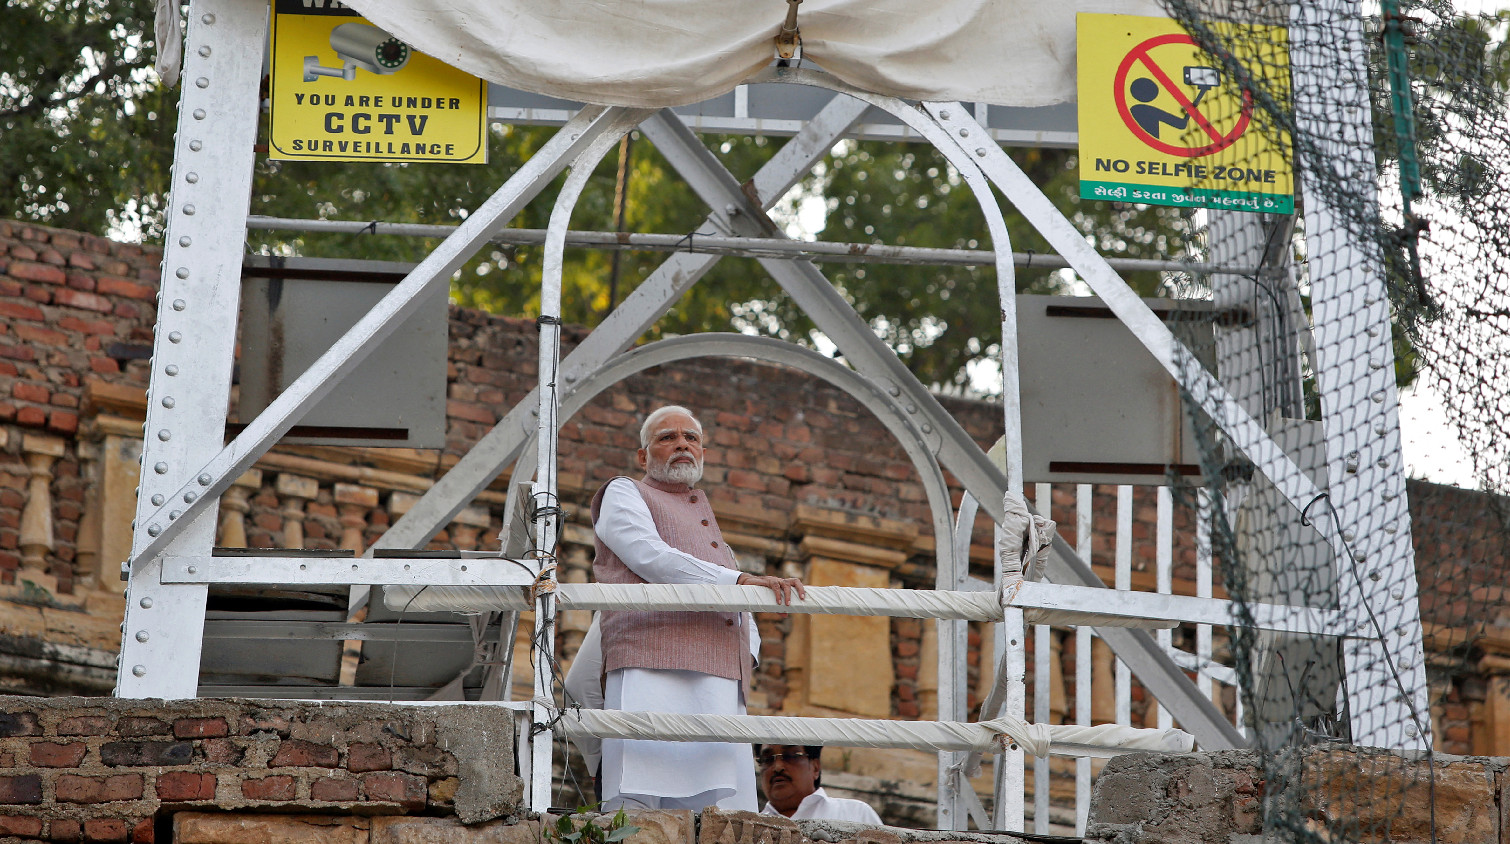 印度總理前往吊橋倒塌事故現場 調查顯示翻修或存漏洞